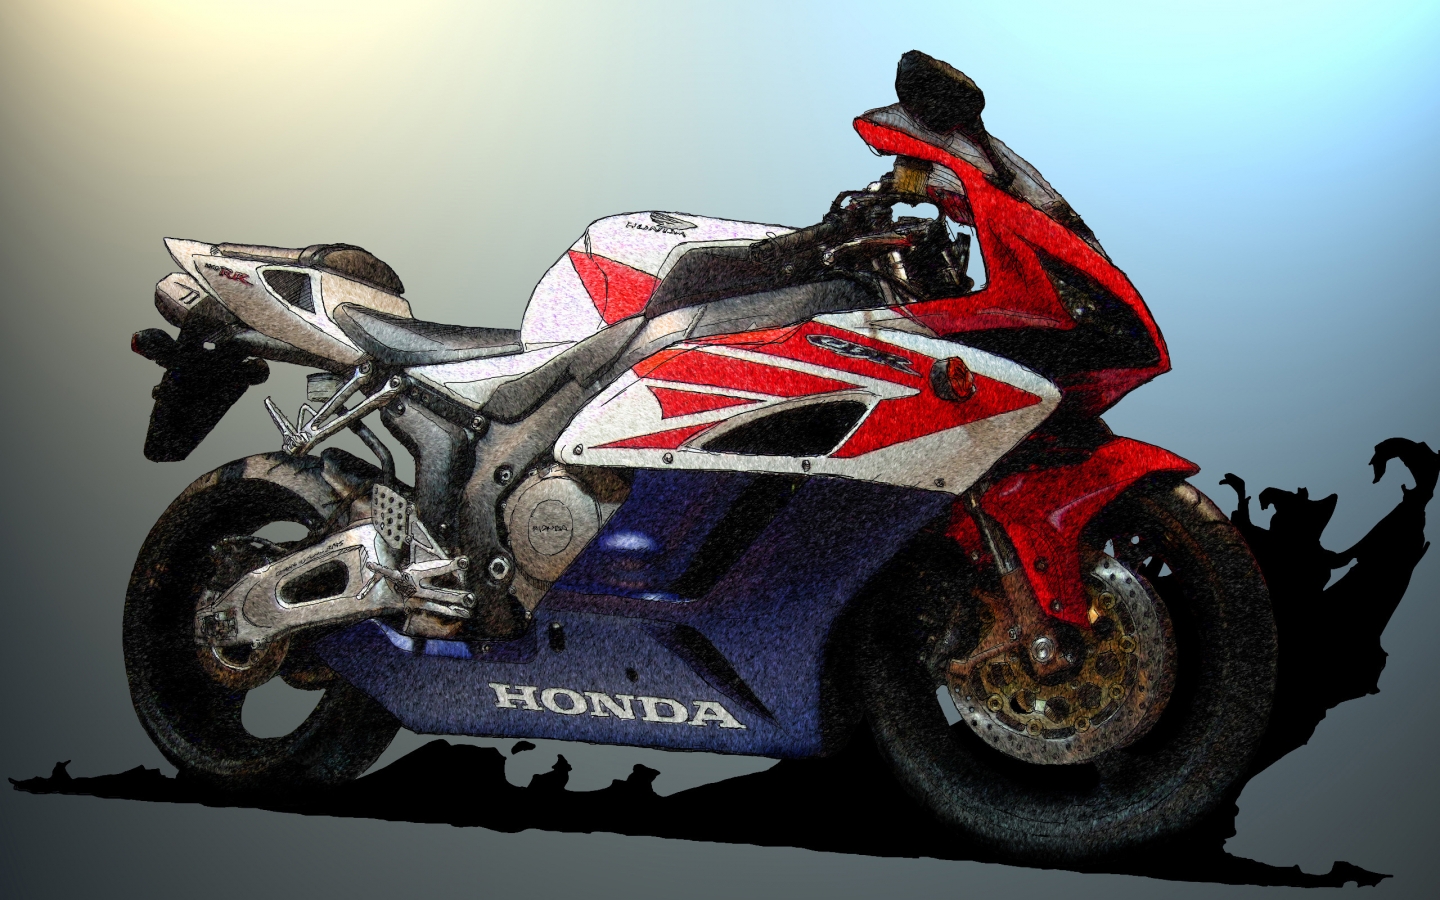 Honda CBR Sketch for 1440 x 900 widescreen resolution